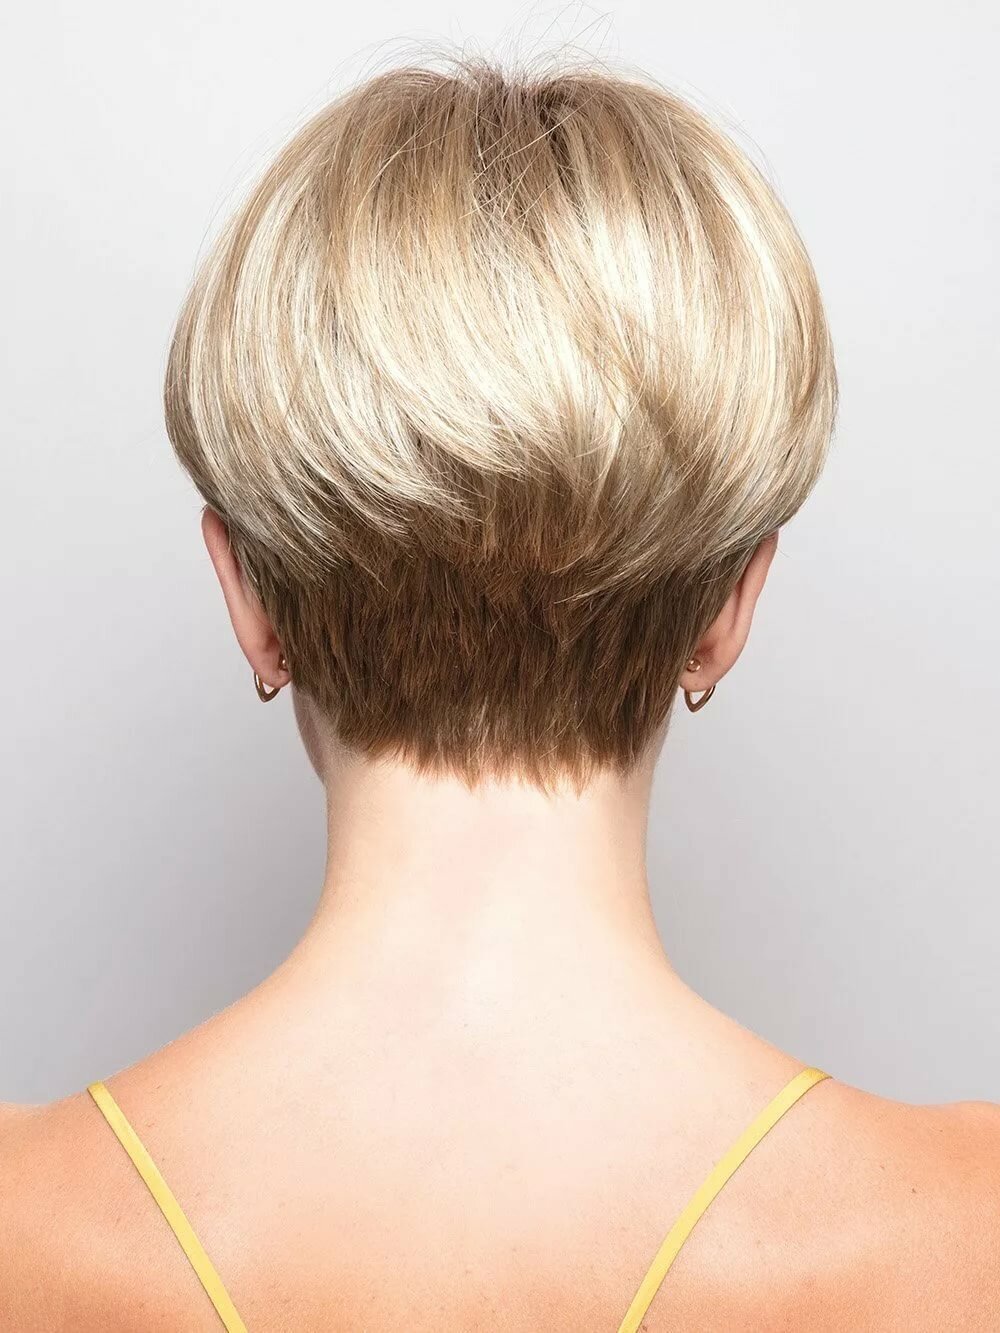 Стрижка боб на короткие и средние волосы - фото | Портал для женщин витамин-п-байкальский.рф